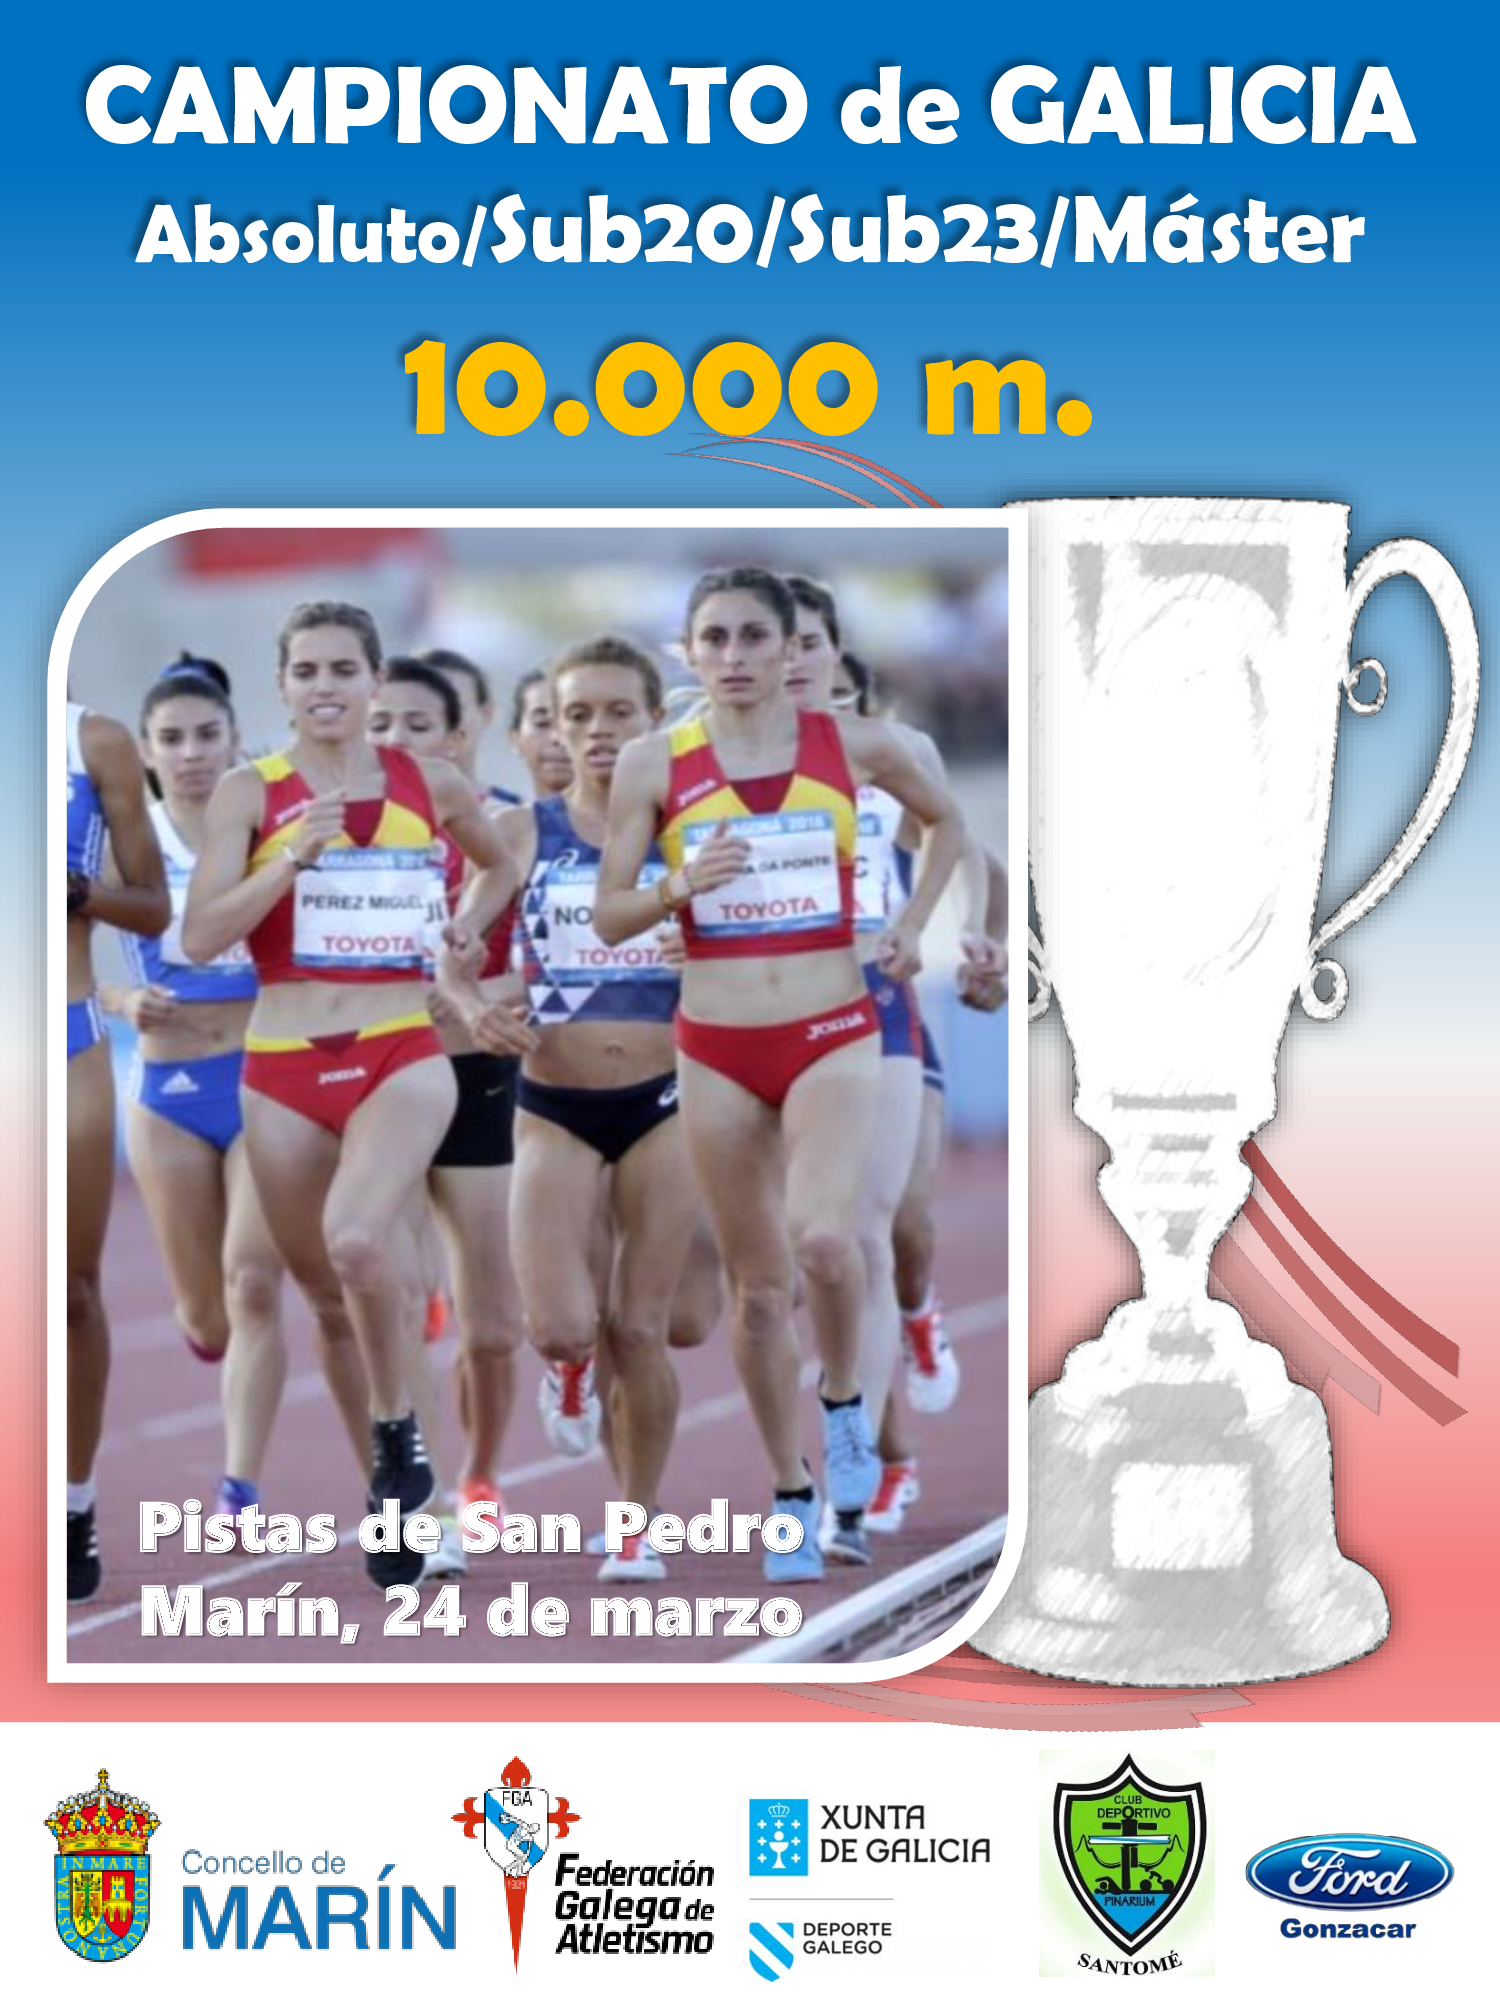 Campionato de Galicia de 10.000 m. 2018/2019